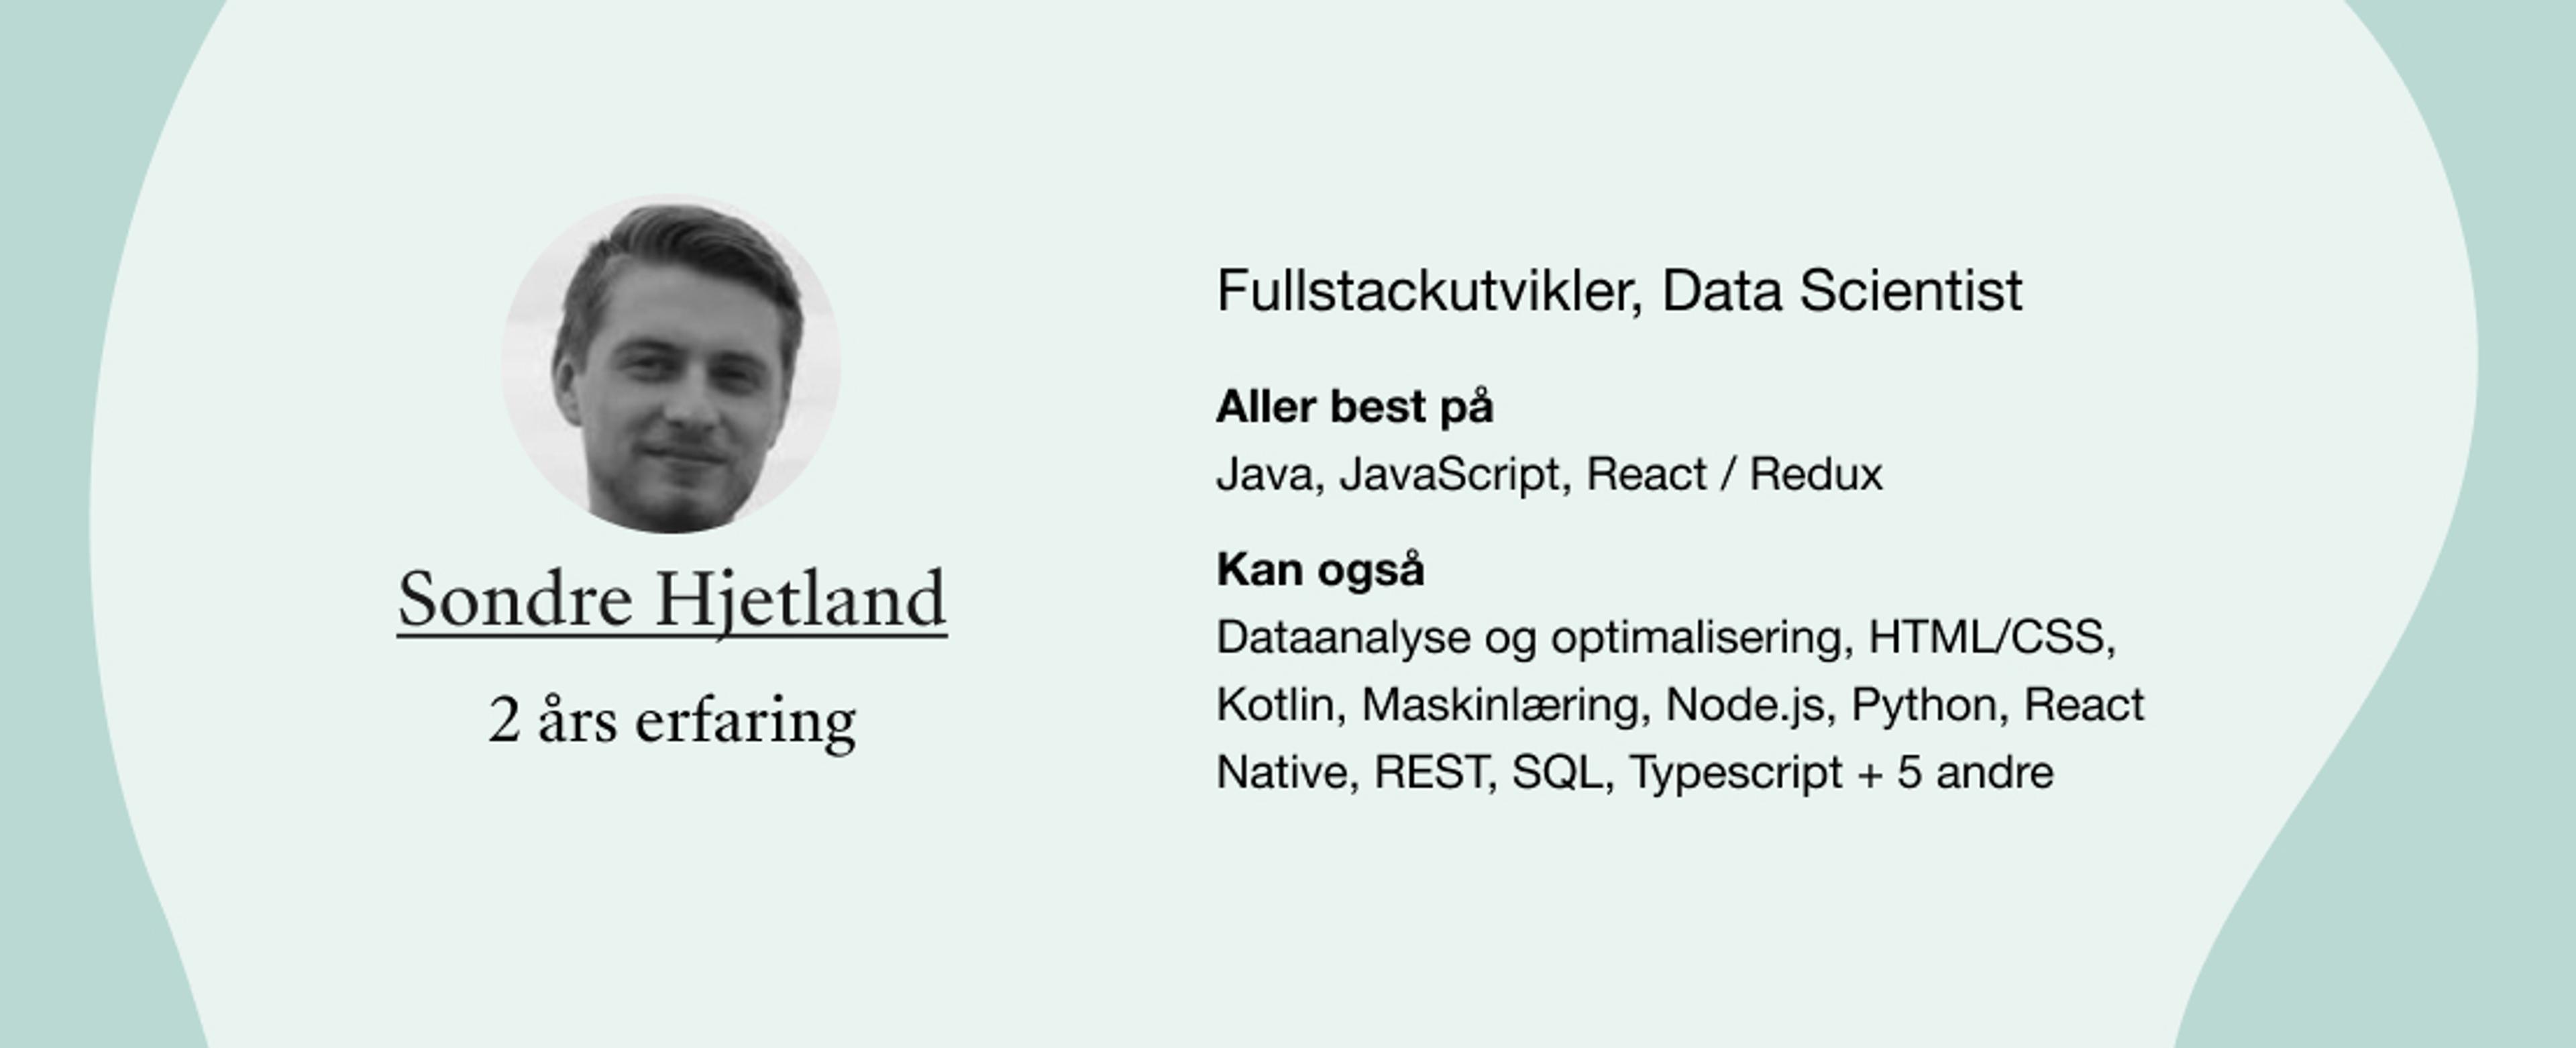 Sondre Hjetland. Roller: Fullstackutvikler, Data Scientist. Kompetanser: Dataanalyse og optimalisering, HTML/CSS, Kotlin, Maskinlæring, Node.js, Python, React Native, REST, SQL, Typescript + 5 andre